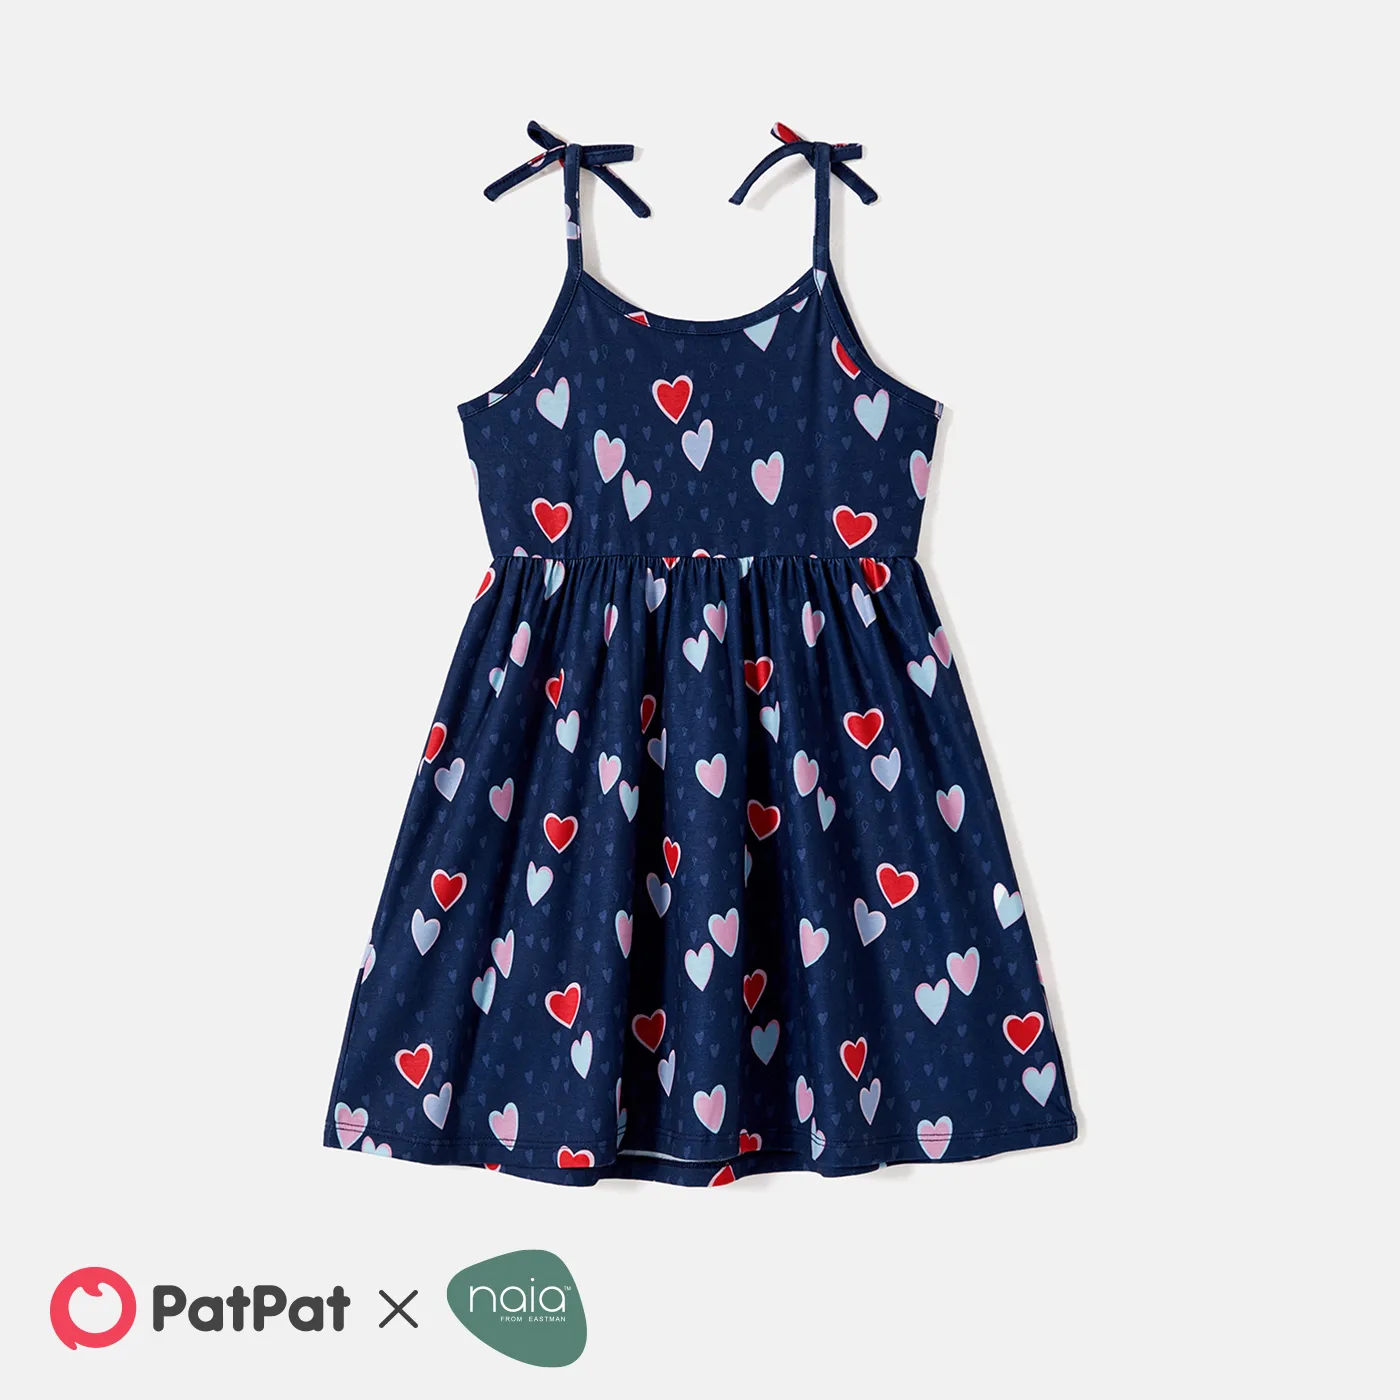 Toddler/Kid Girl Naiatm Colorful Heart Print Bowknot Design Slip Dress